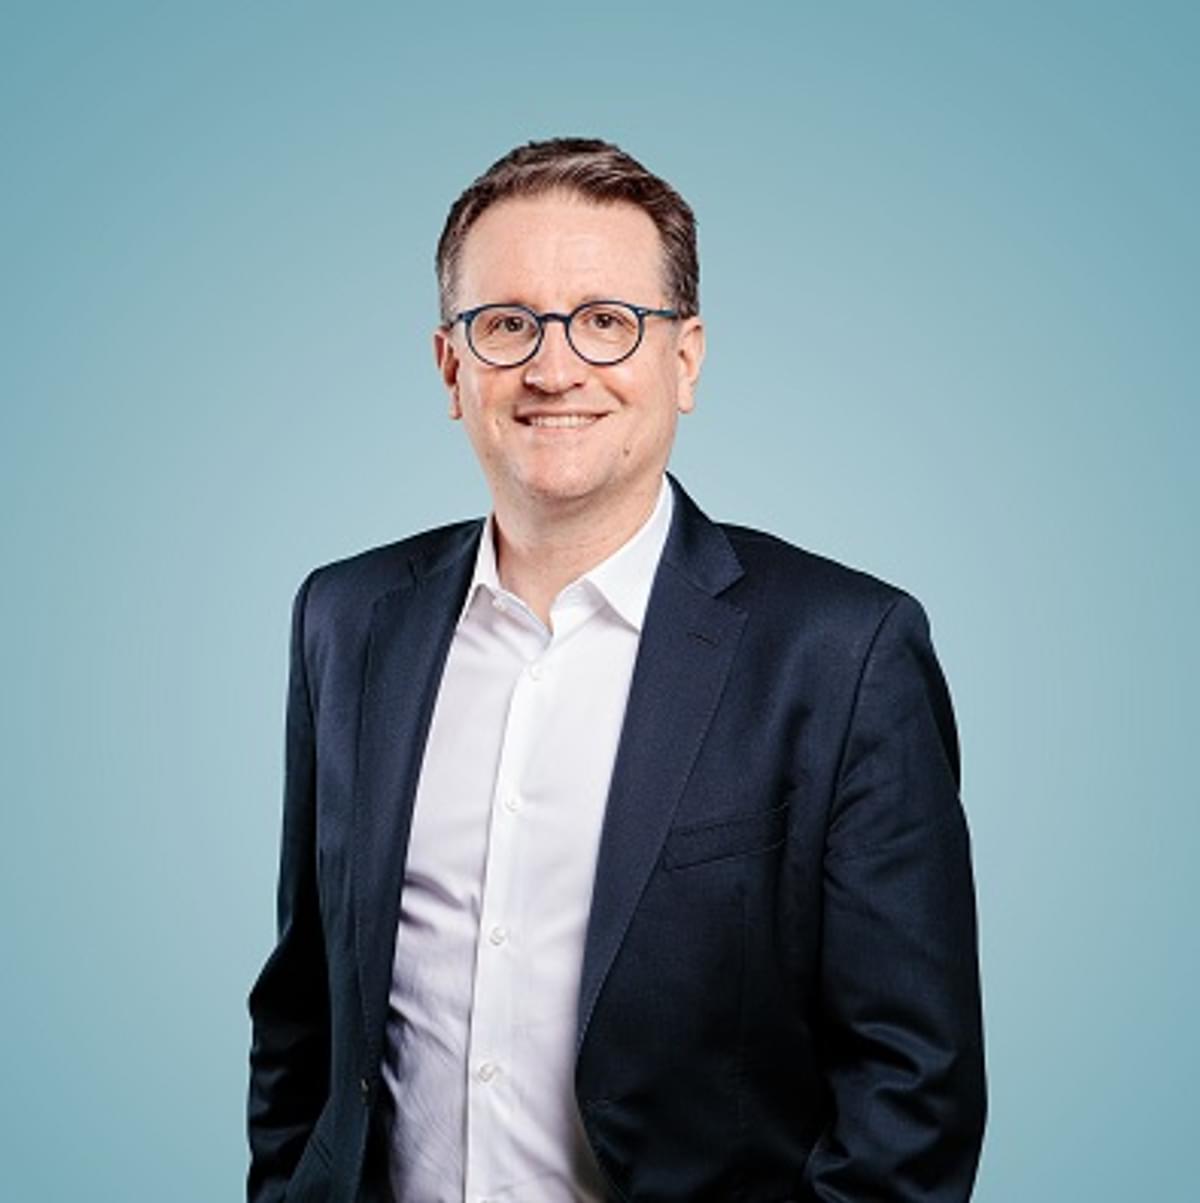 Rodolphe Belmer is de nieuwe CEO van Atos image